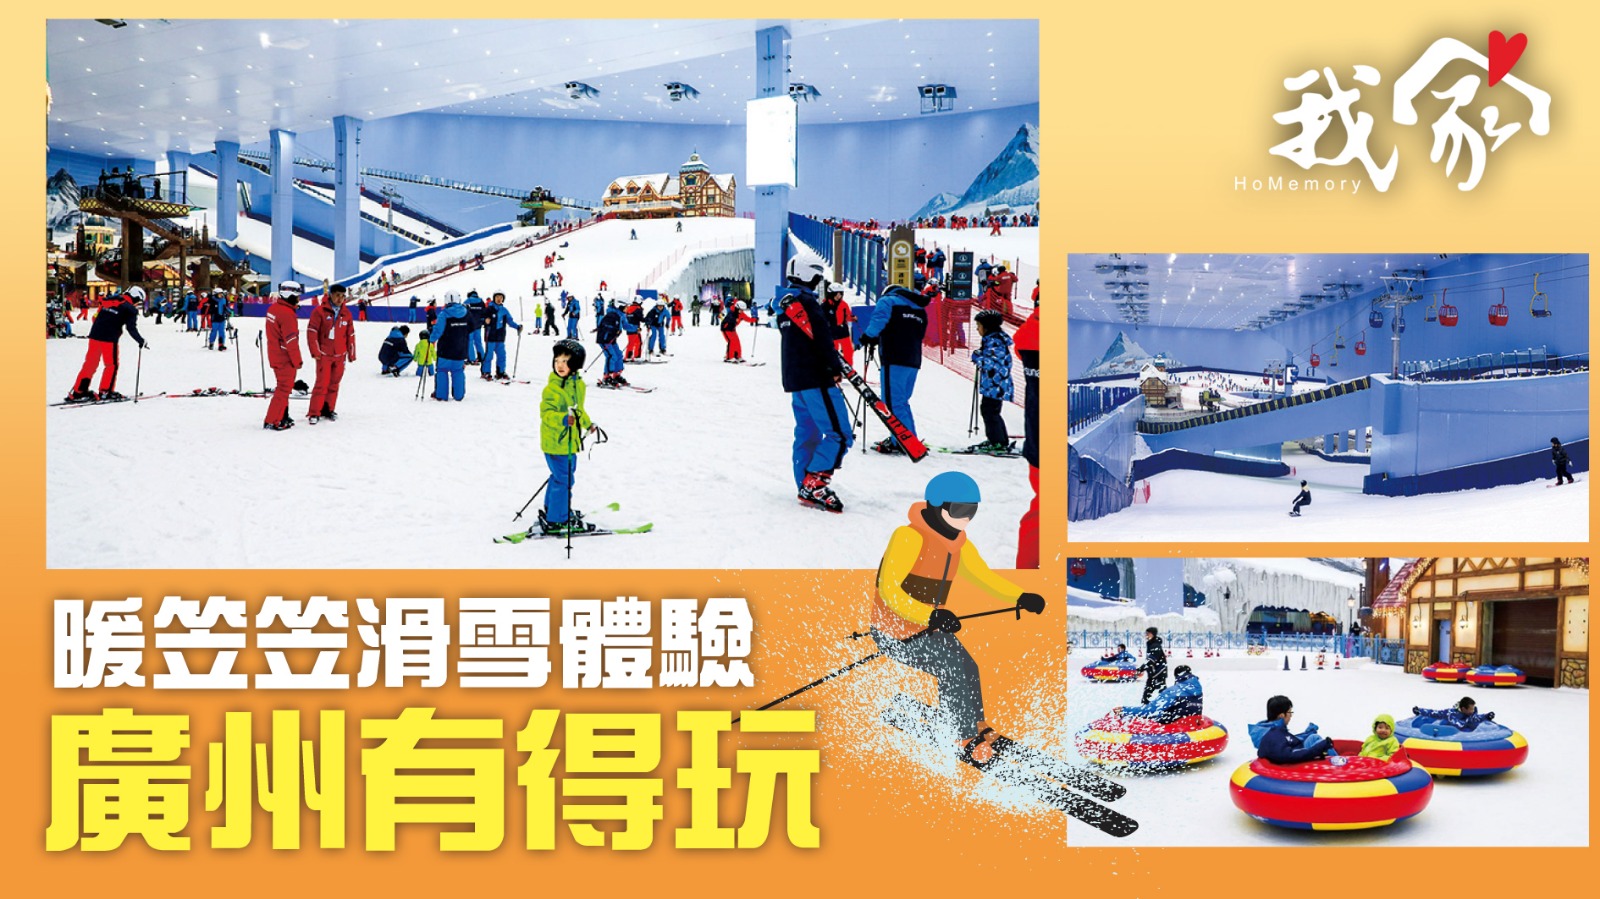 暖笠笠滑雪體驗 廣州有得玩